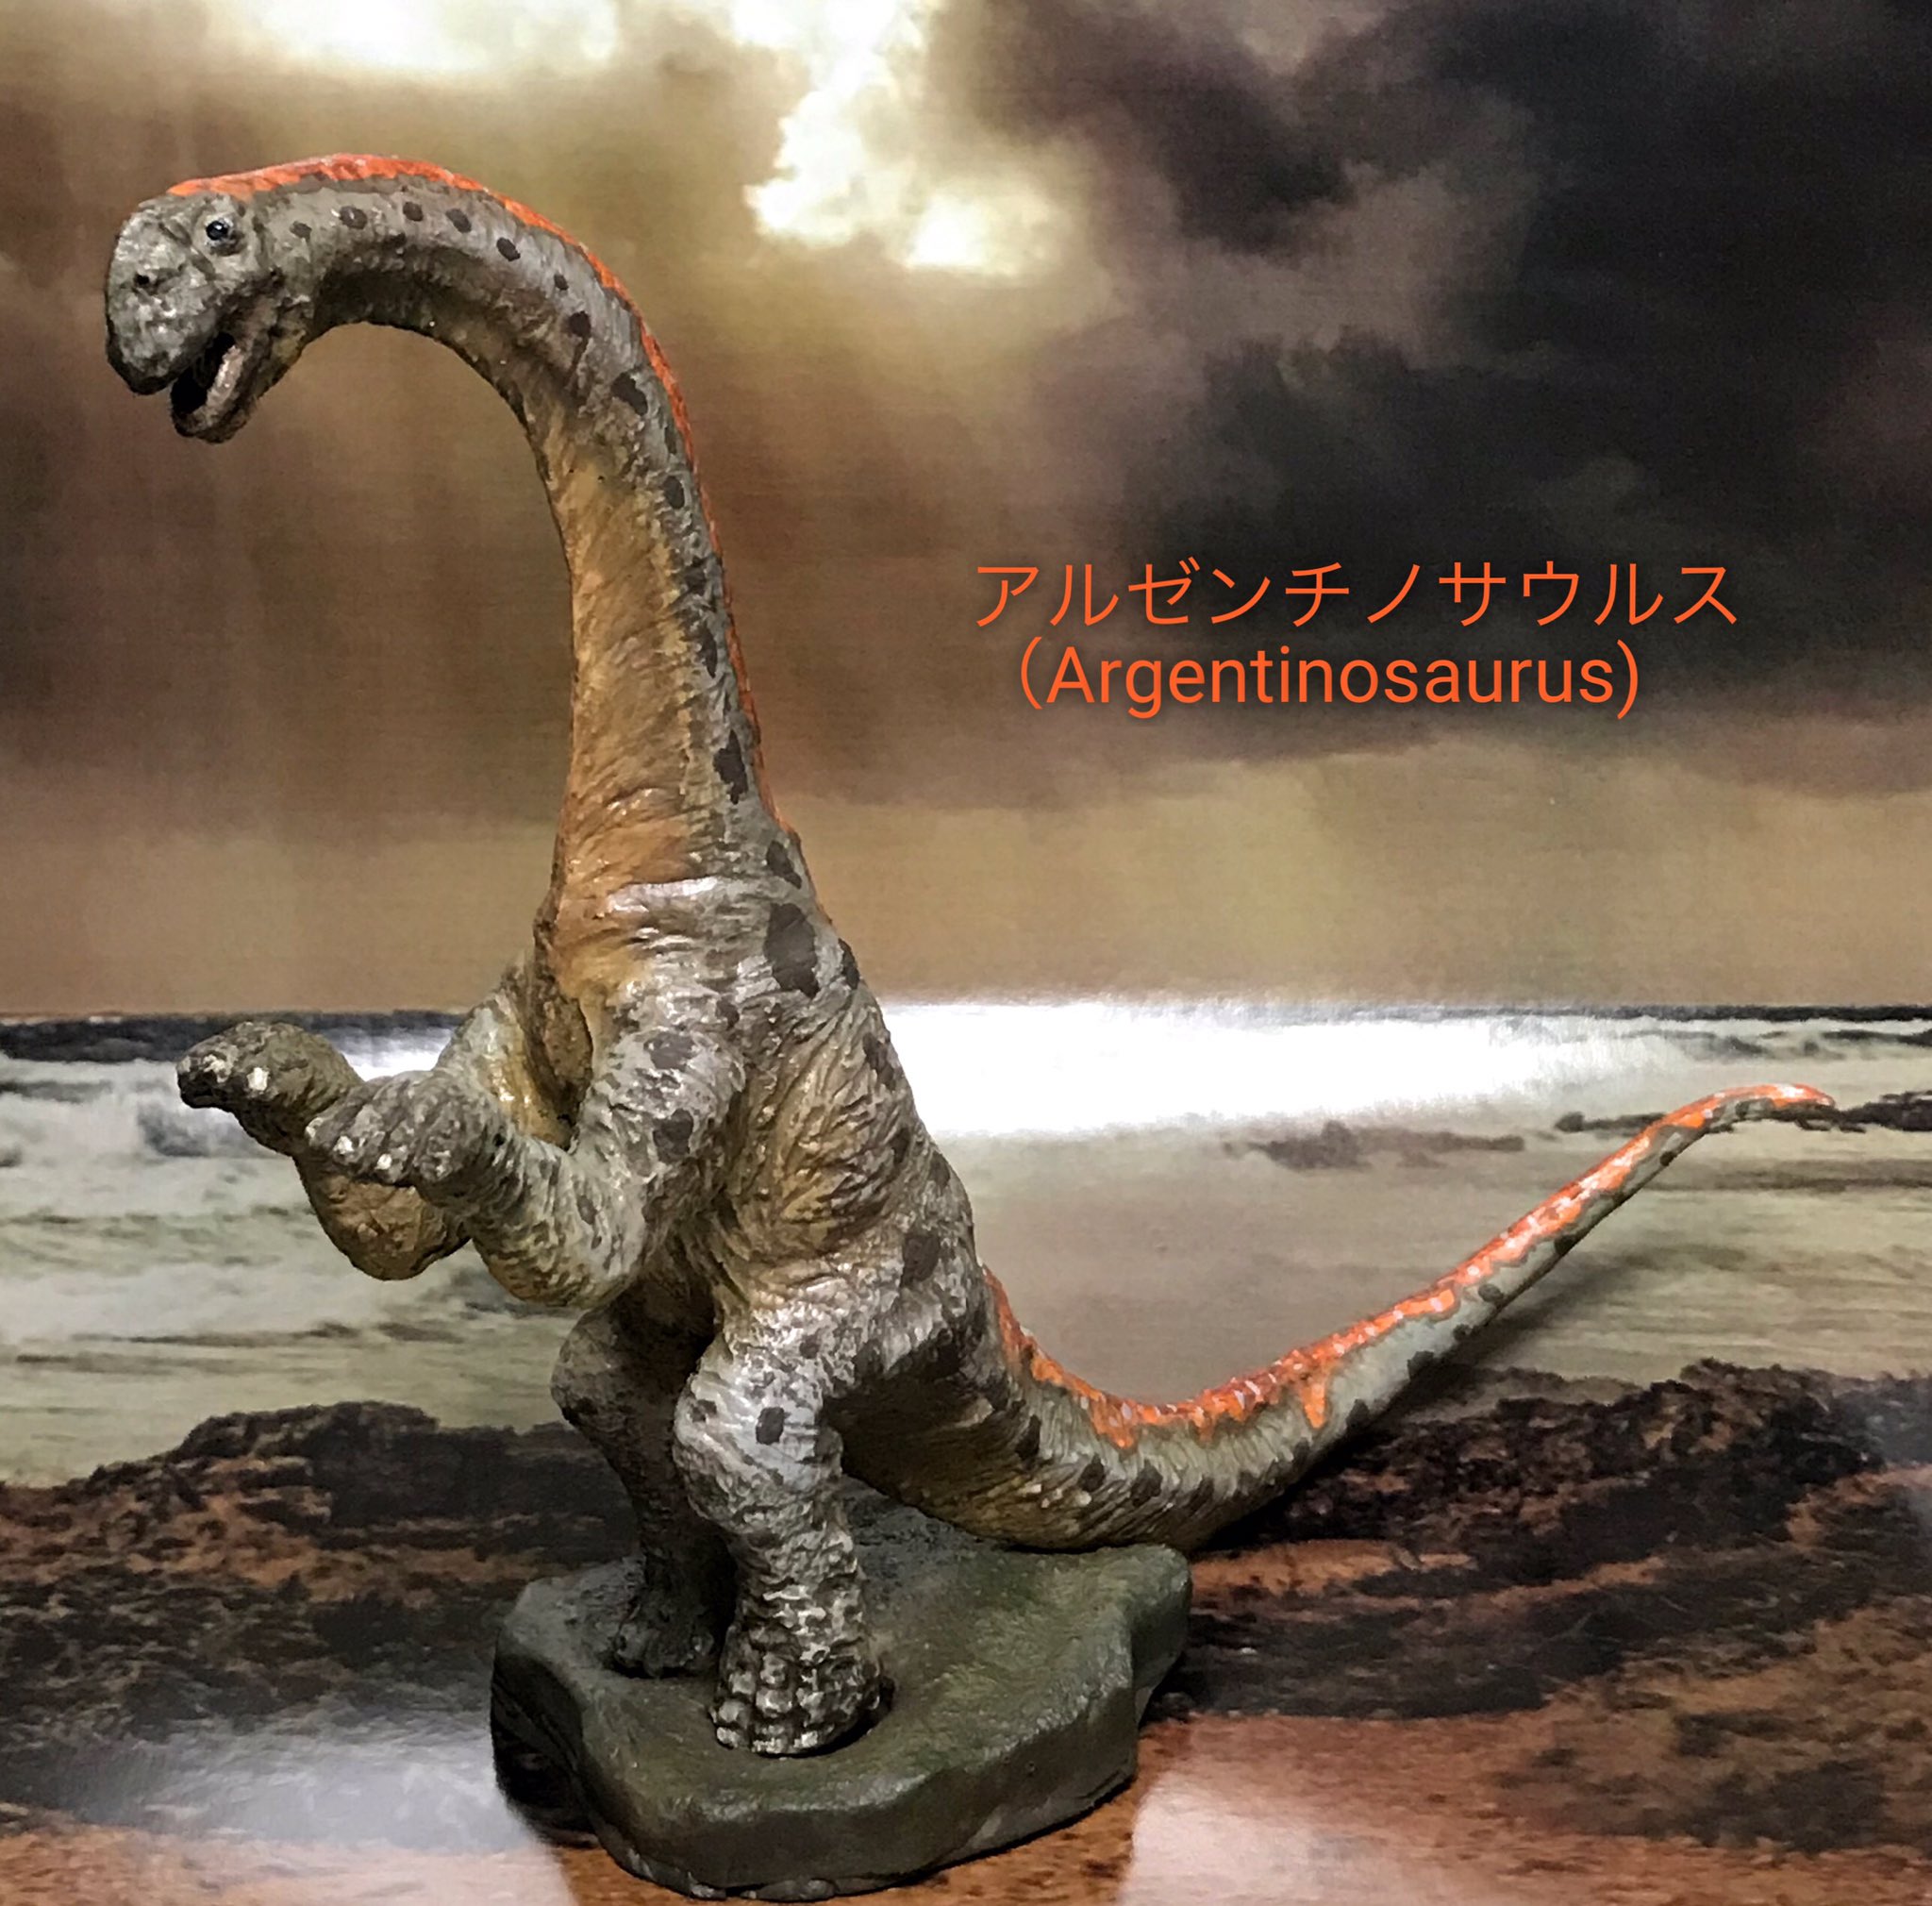 狂夜 A Twitter マプサウルスとアルゼンチノサウルスの塗装見本完成 ついでにパッケージも作りました キット価格もまだ考え中なんで また後日後悔します Wf19w 恐竜 T Co Fp5pe7irf1 Twitter